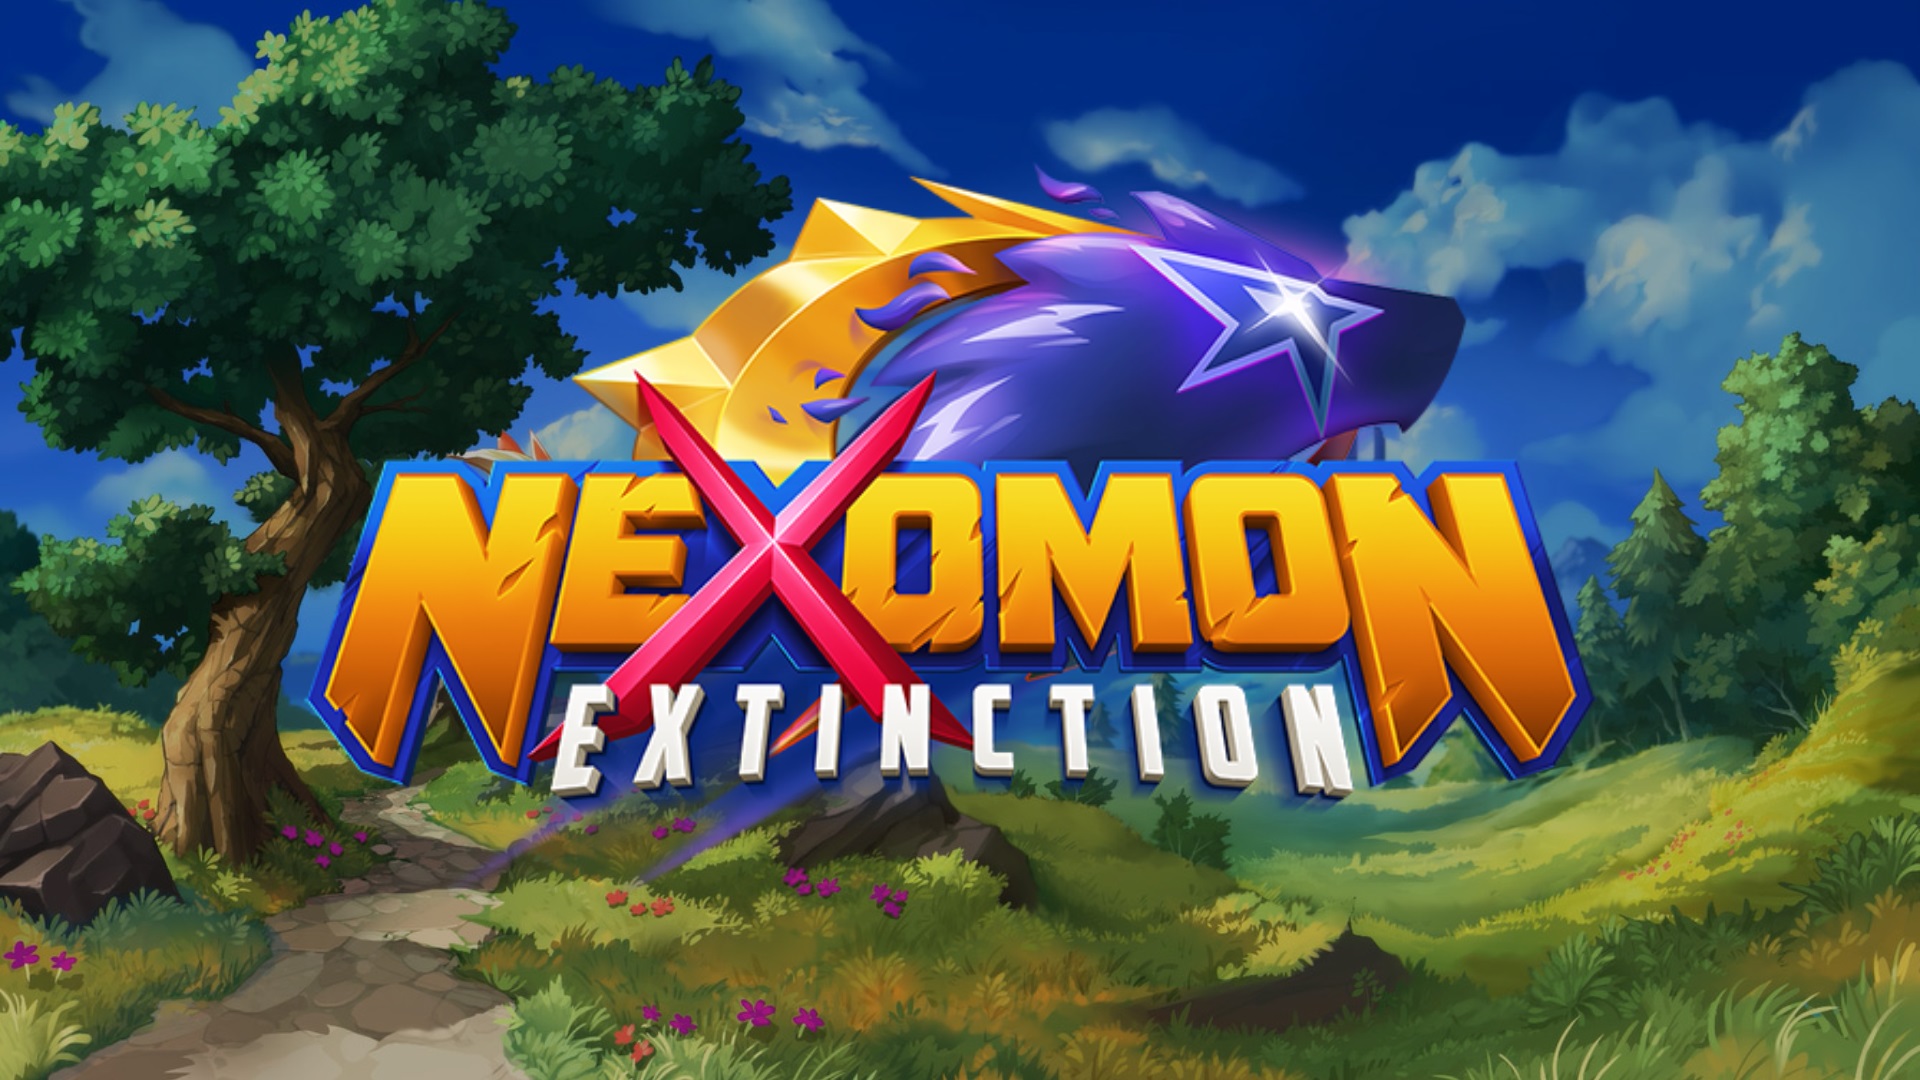 nexomon extinction characters